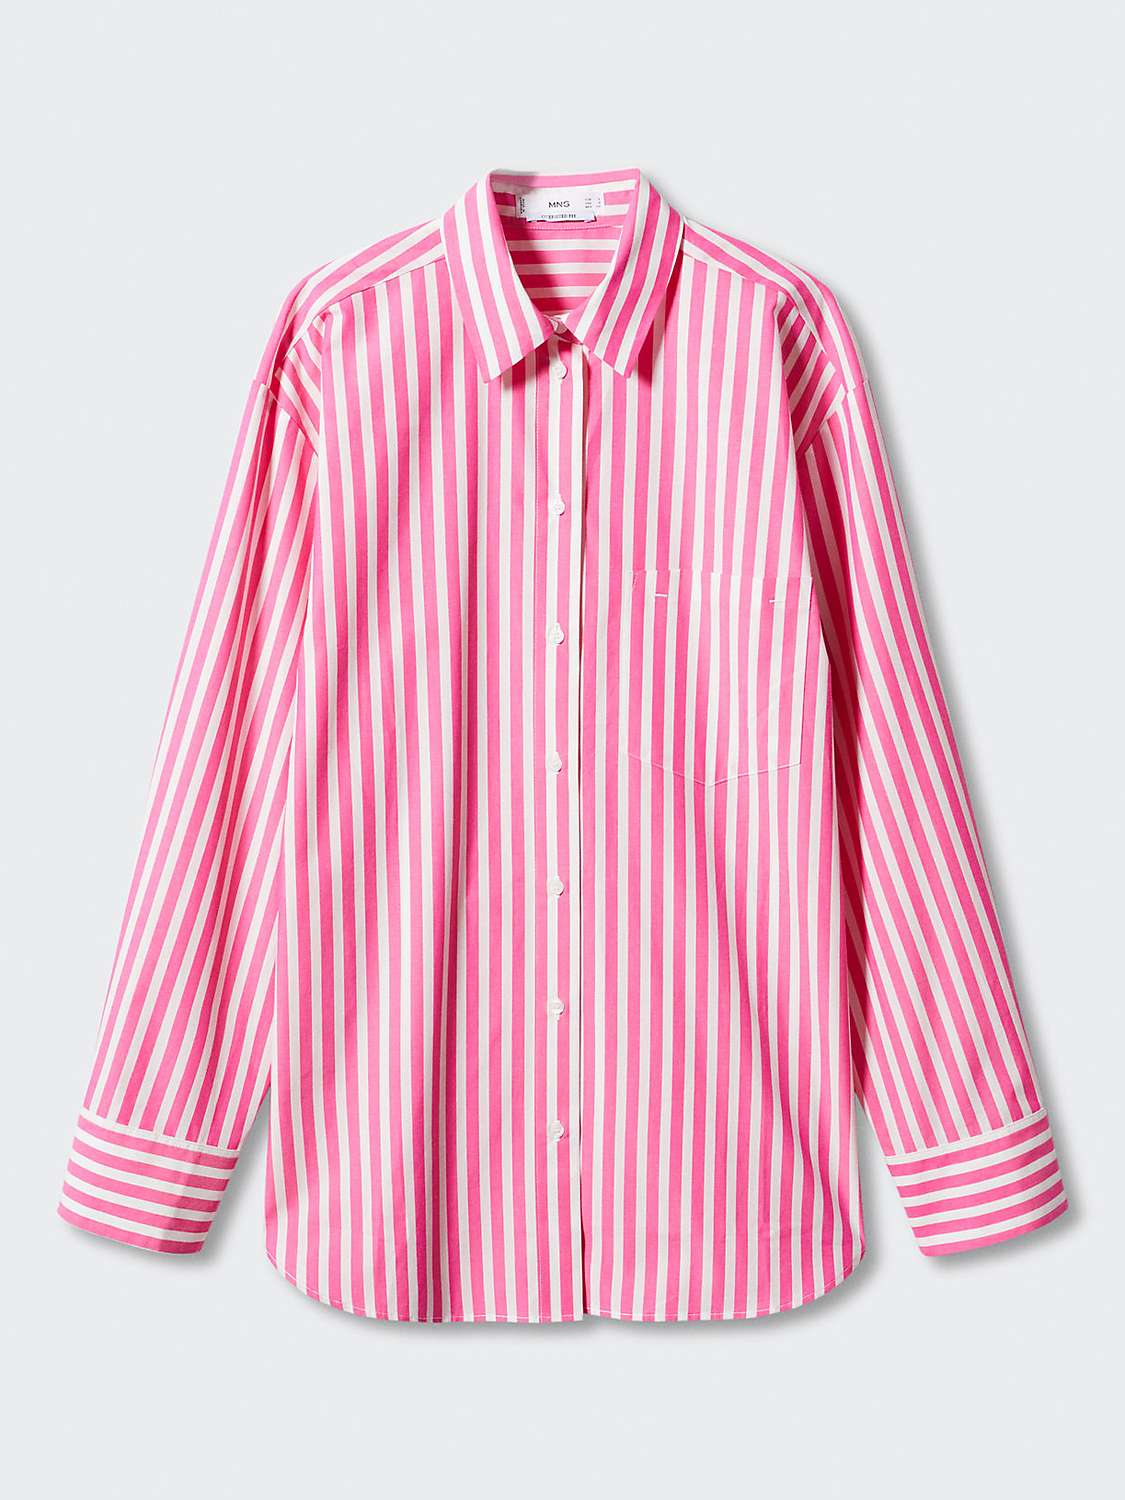 Mango Juanes Oversized Stripe Shirt, Bright Pink at John Lewis & Partners